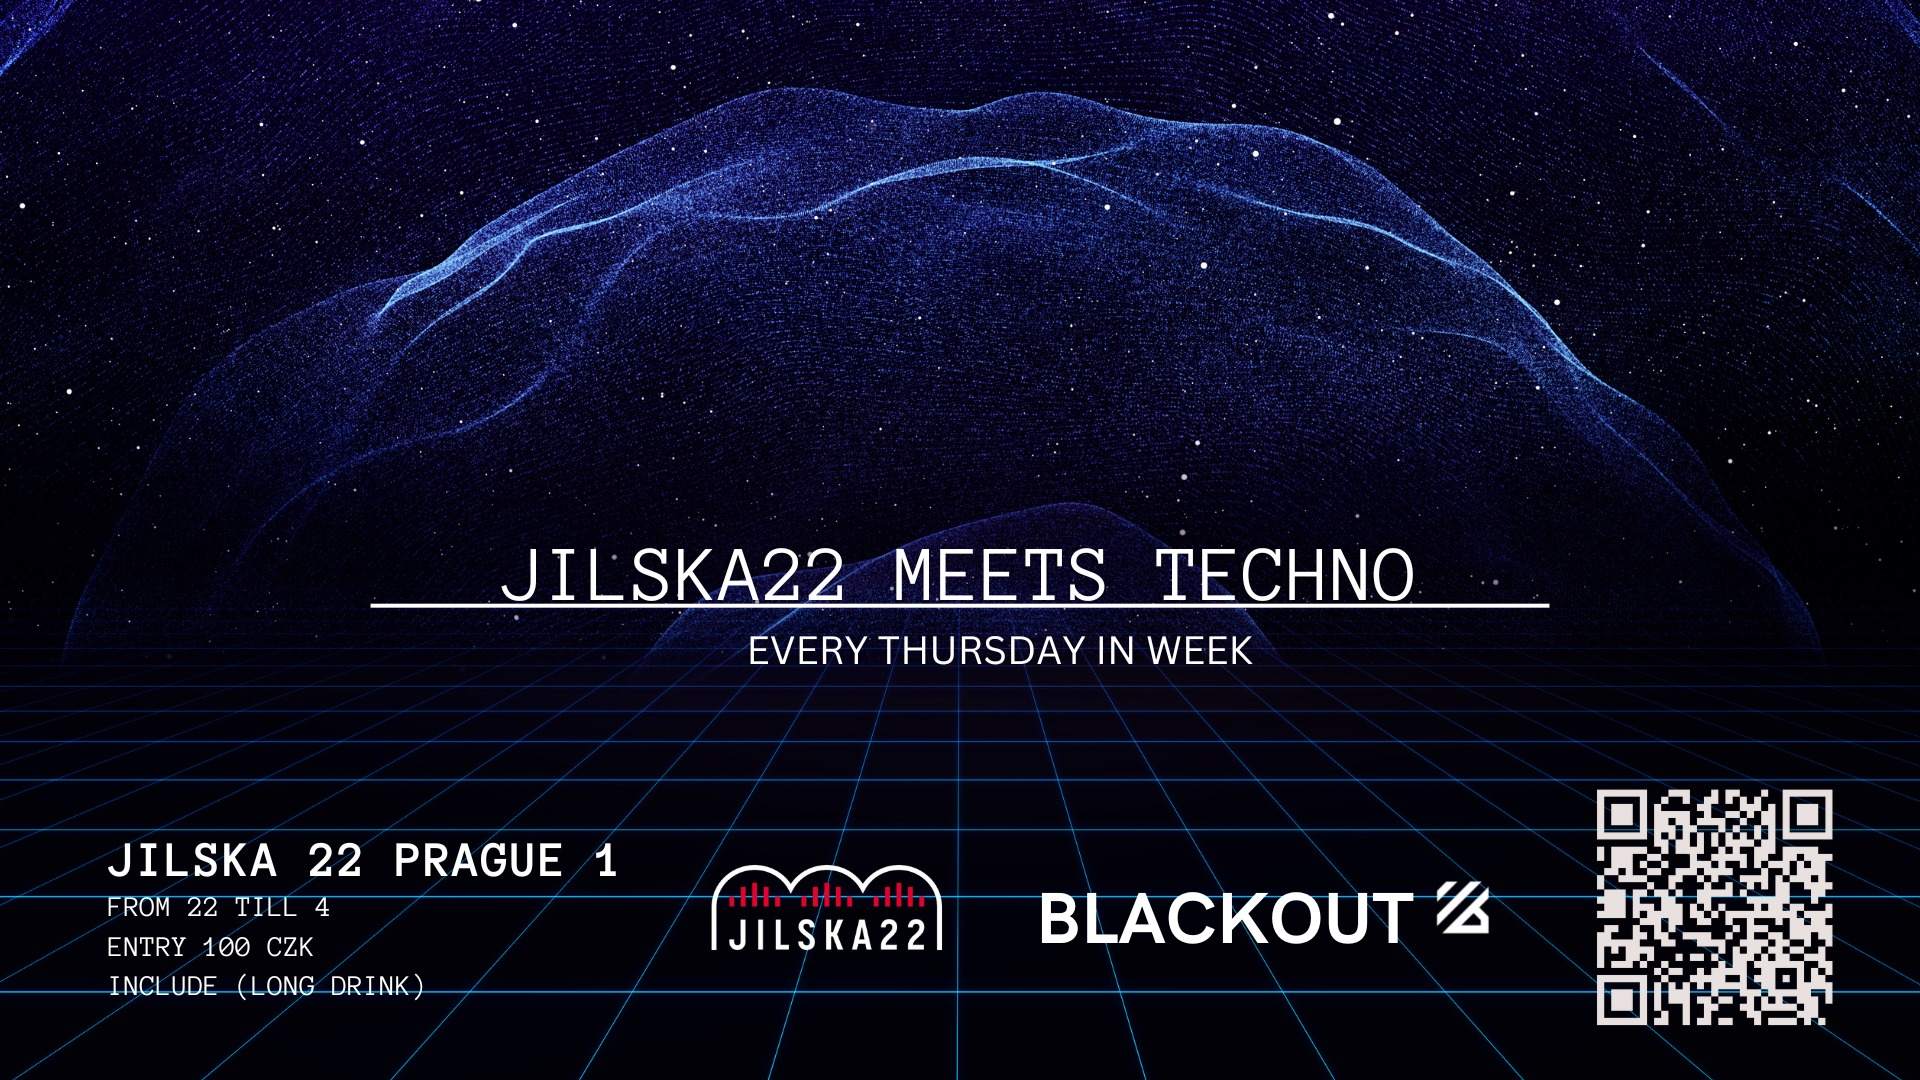 Jilska 22 meets Techno by Blackout - Página frontal